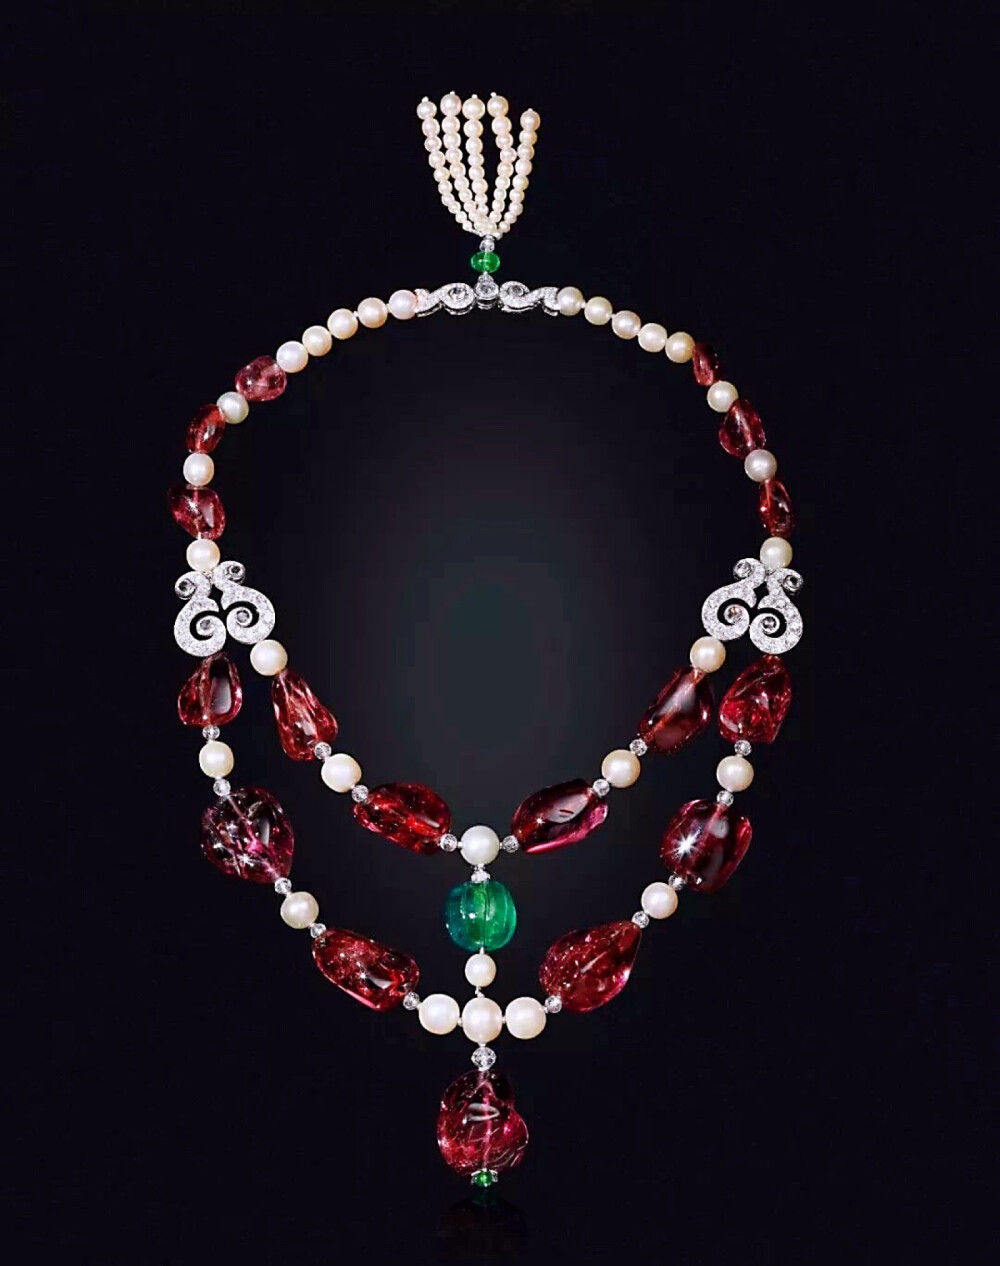 尖晶石、珍珠配祖母绿项链
共7颗尖晶石珠